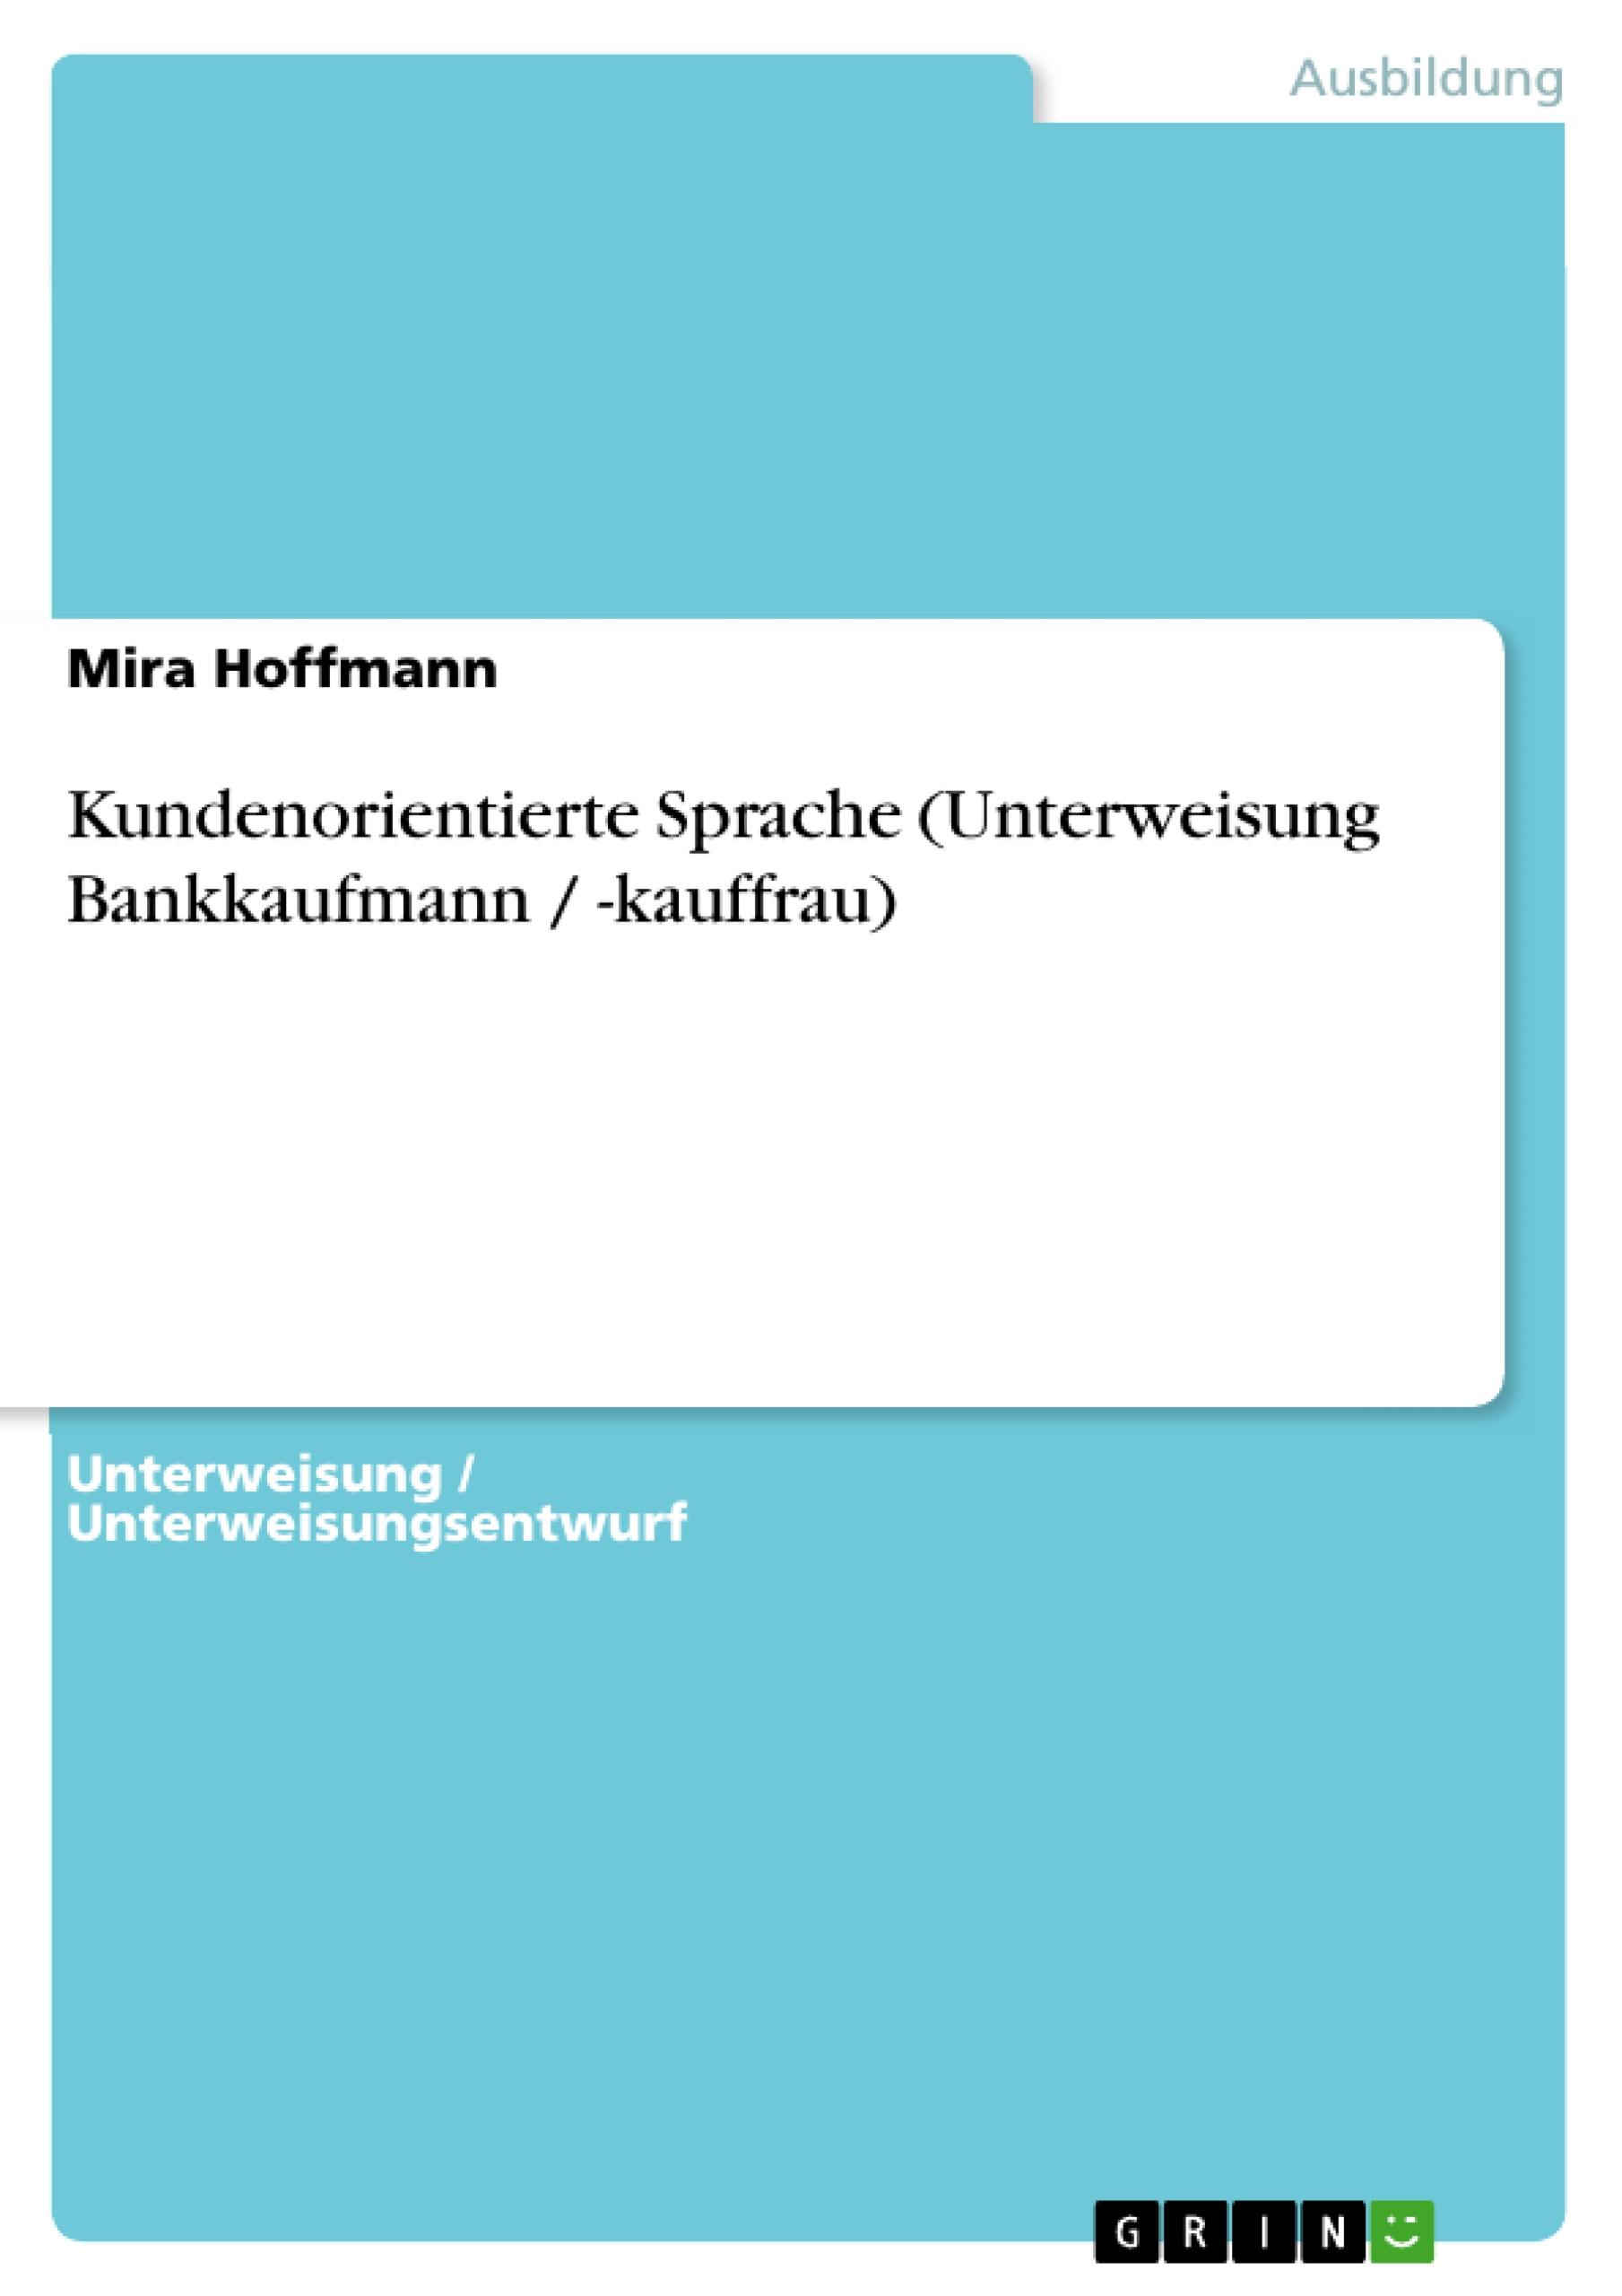 Kundenorientierte Sprache (Unterweisung Bankkaufmann / -kauffrau) - Hoffmann, Mira